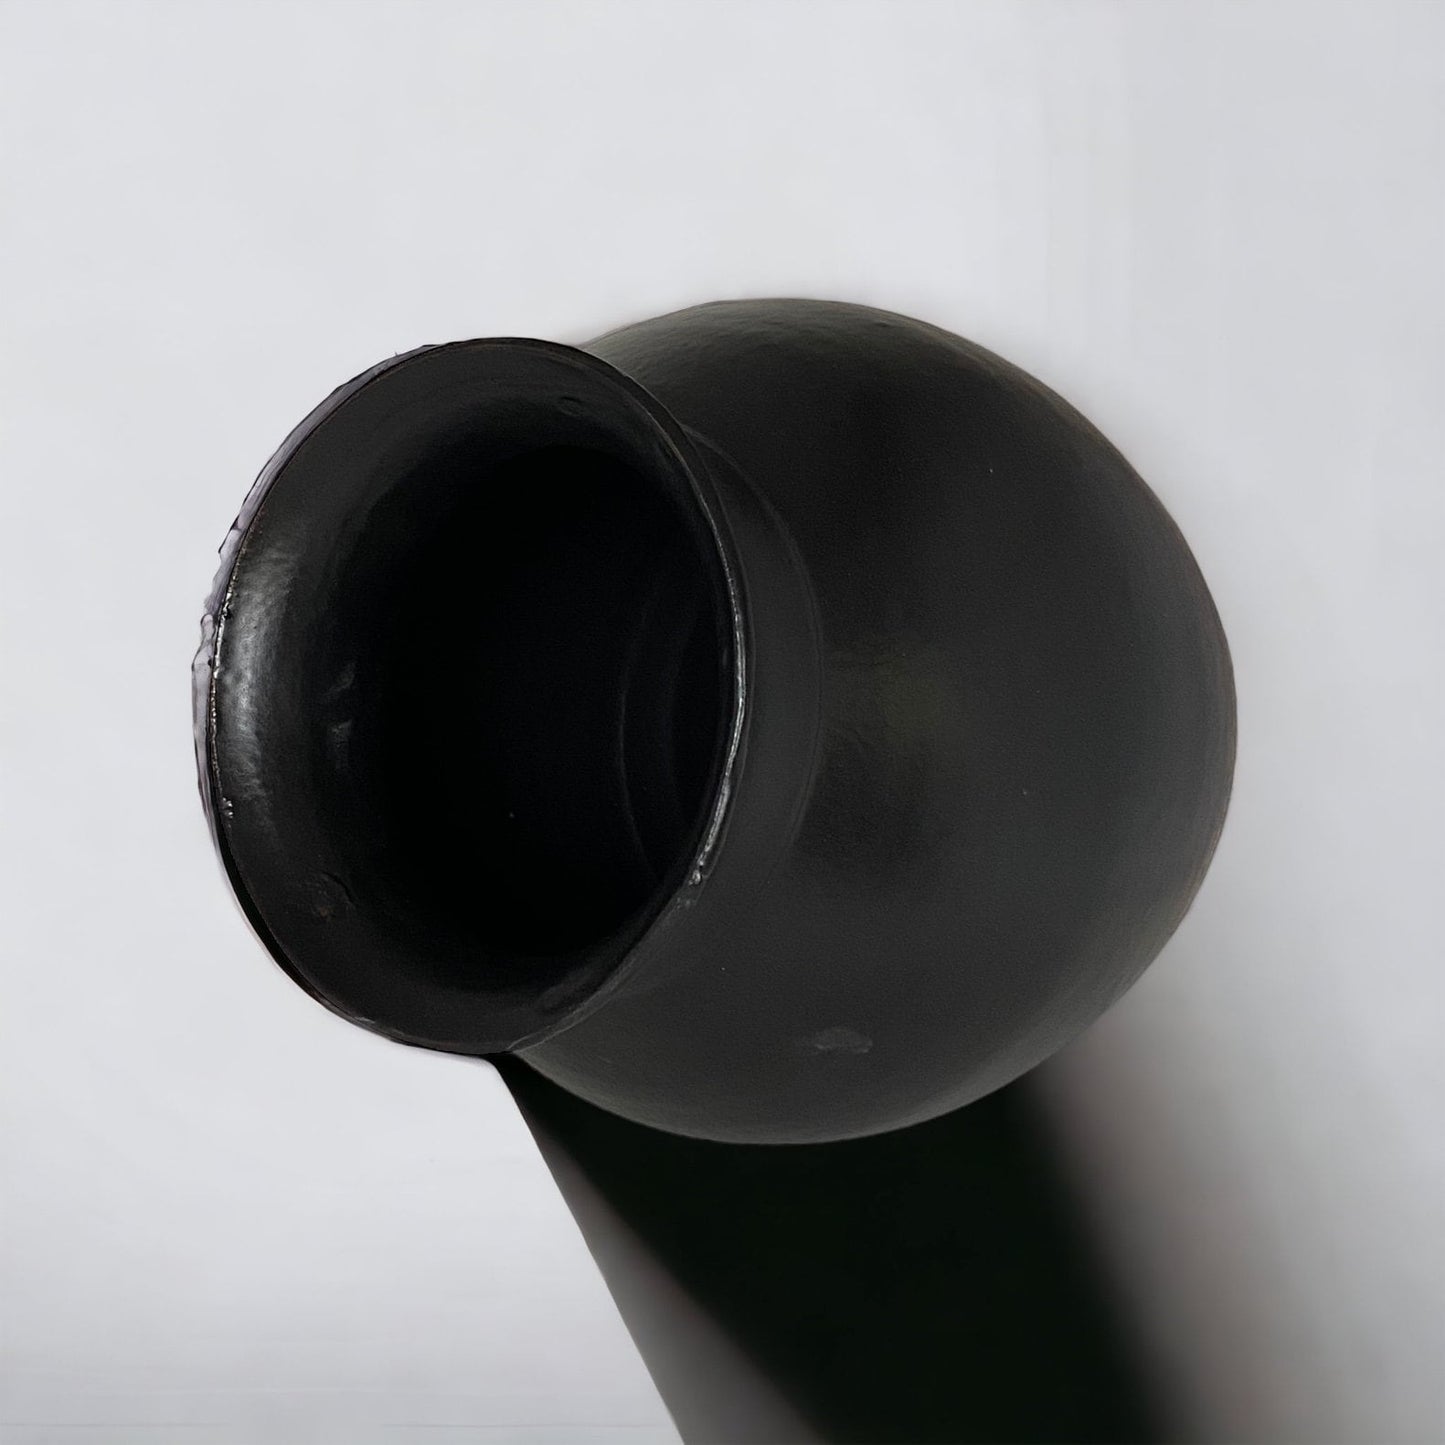 Matte Black Flower Vase - Pottery Flower Vase - Contemporary Ceramic Pottery Vase - Modern Vases